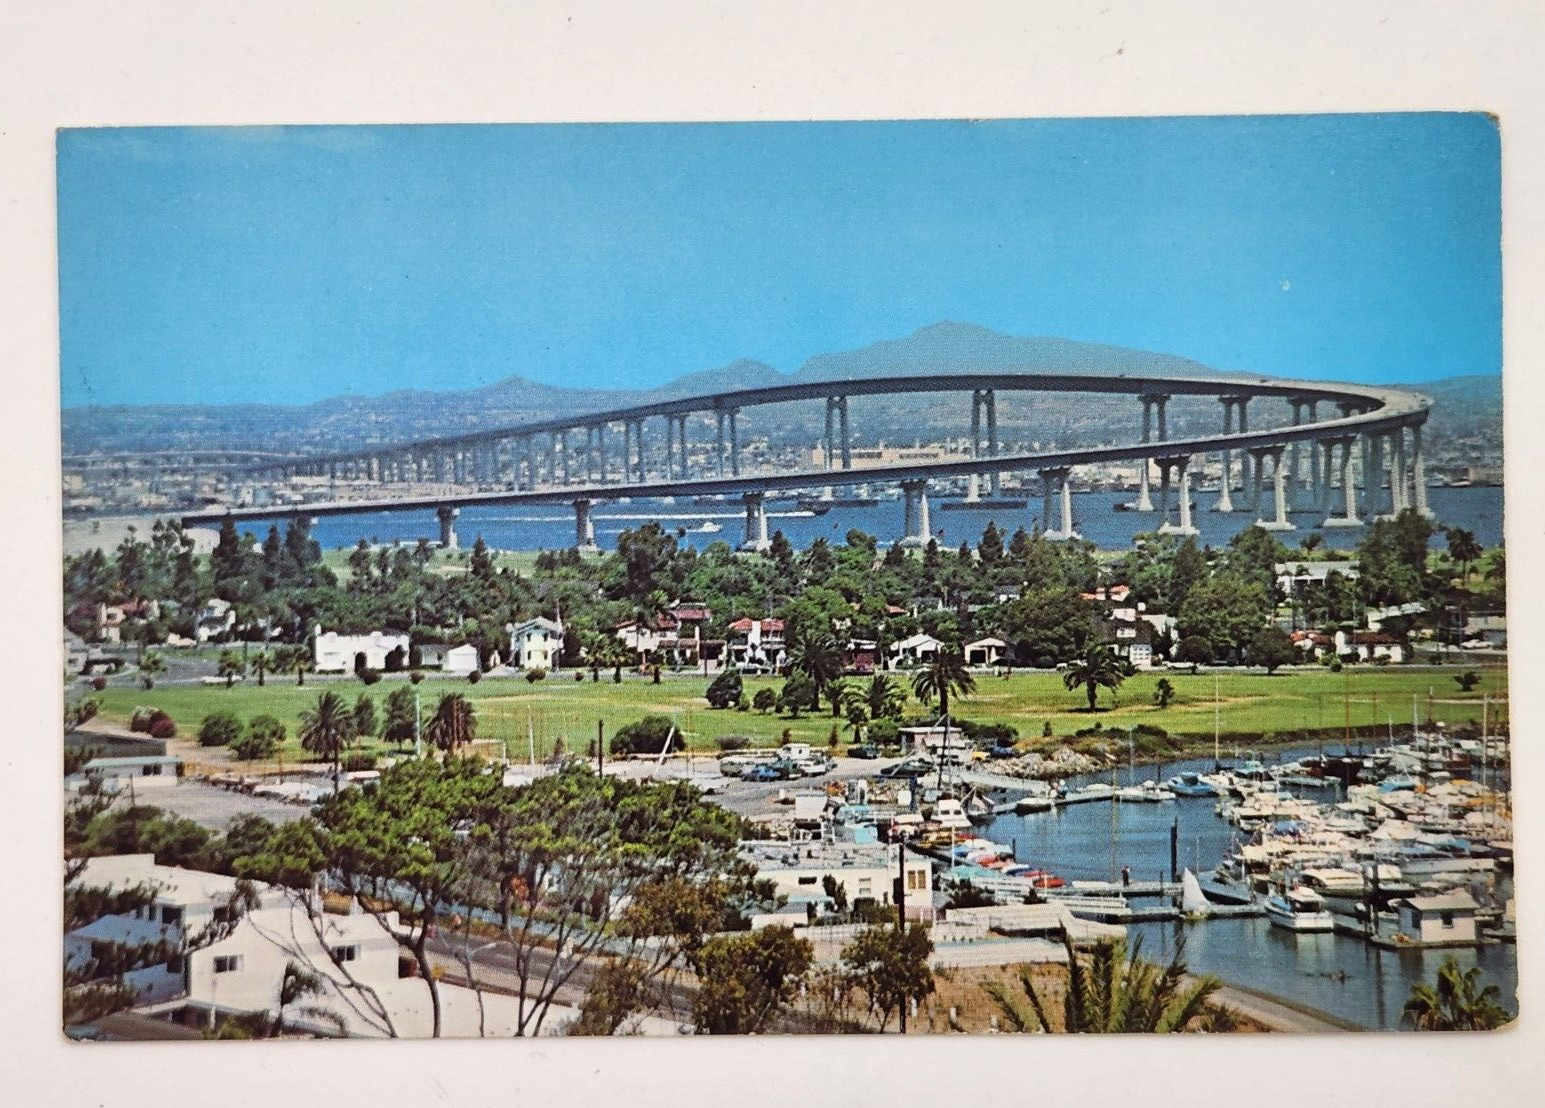 San Diego, California - The San Diegan Coronado Bridge - Vintage Postcard - 1972